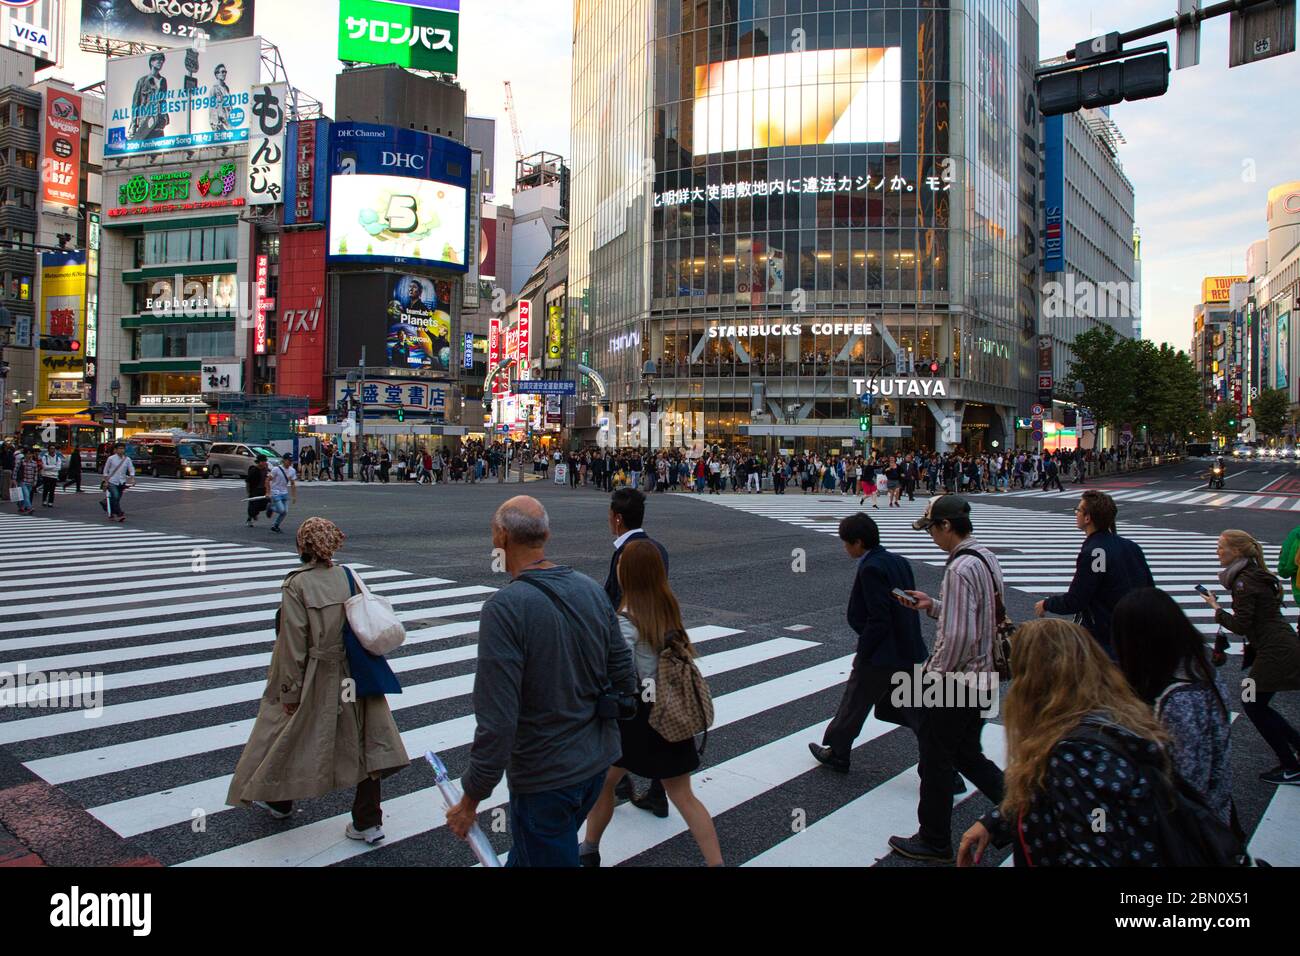 TOKYO/GIAPPONE - 30 luglio 2019 : Shibuya Scramble è conosciuta per il suo crocevia più trafficato del mondo ed è il leader della lista più importante della gente in Foto Stock